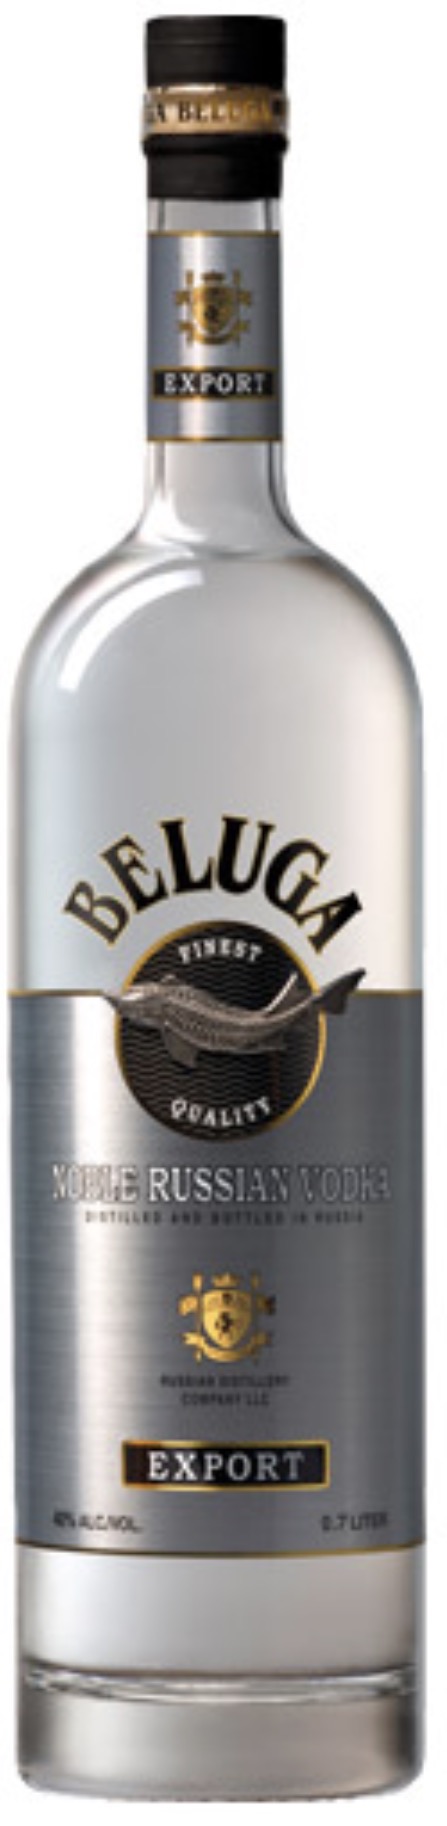 Beluga Noble Russian Vodka Export 40 % vol. 0,7 L